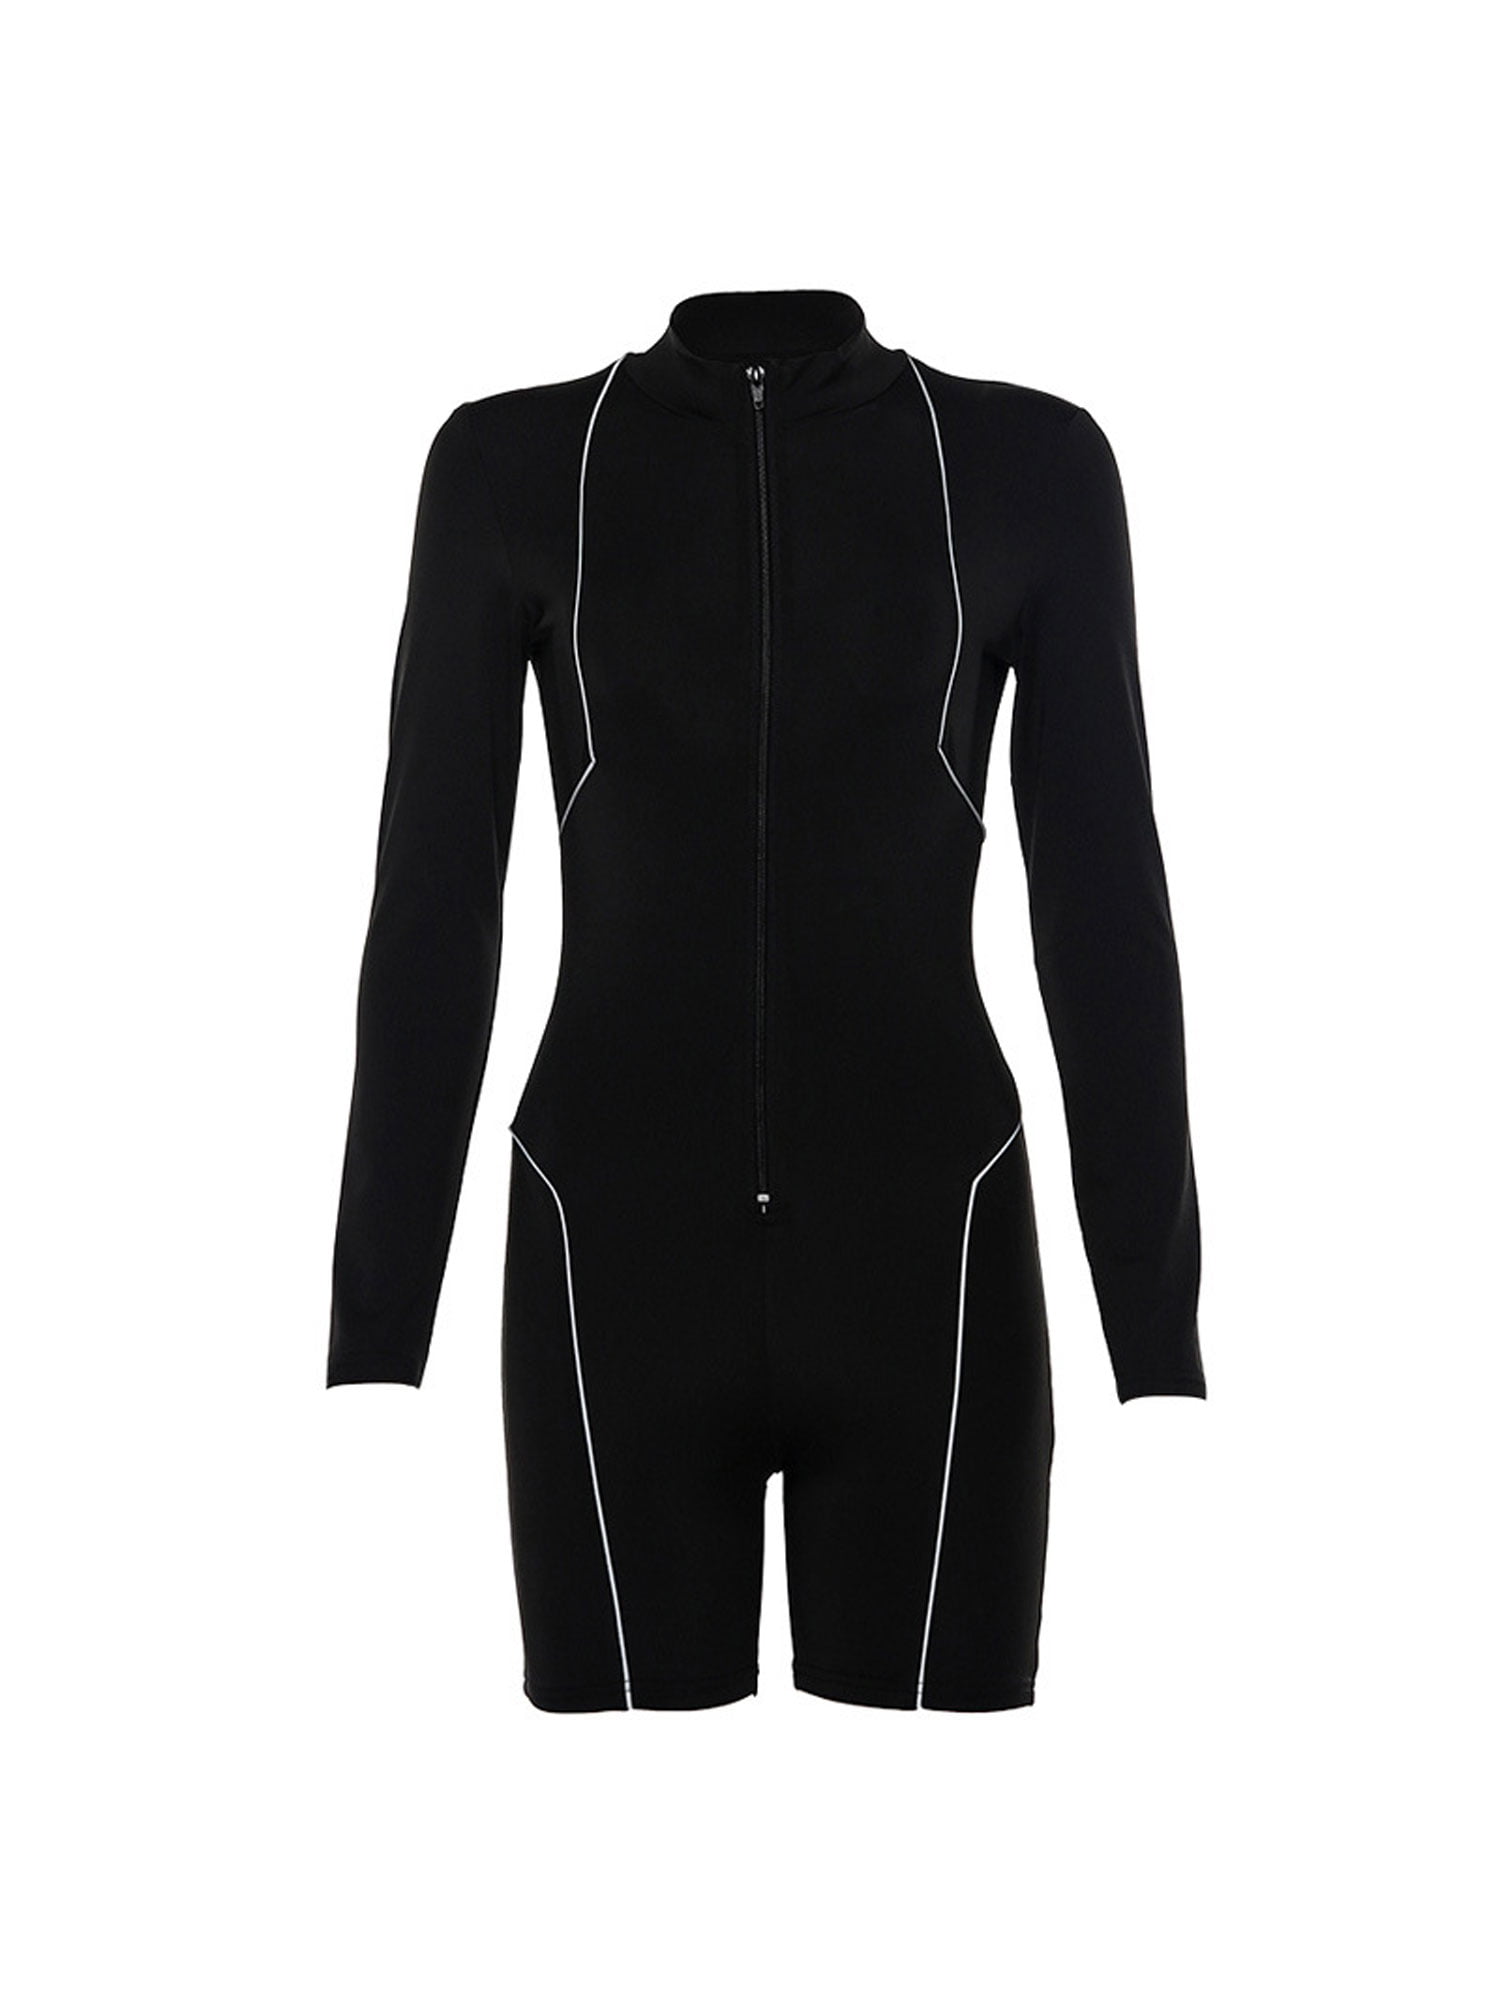 Woman Long Sleeve Bodysuit reflective Stripes Patchwork Front Zipper Jumpsuit